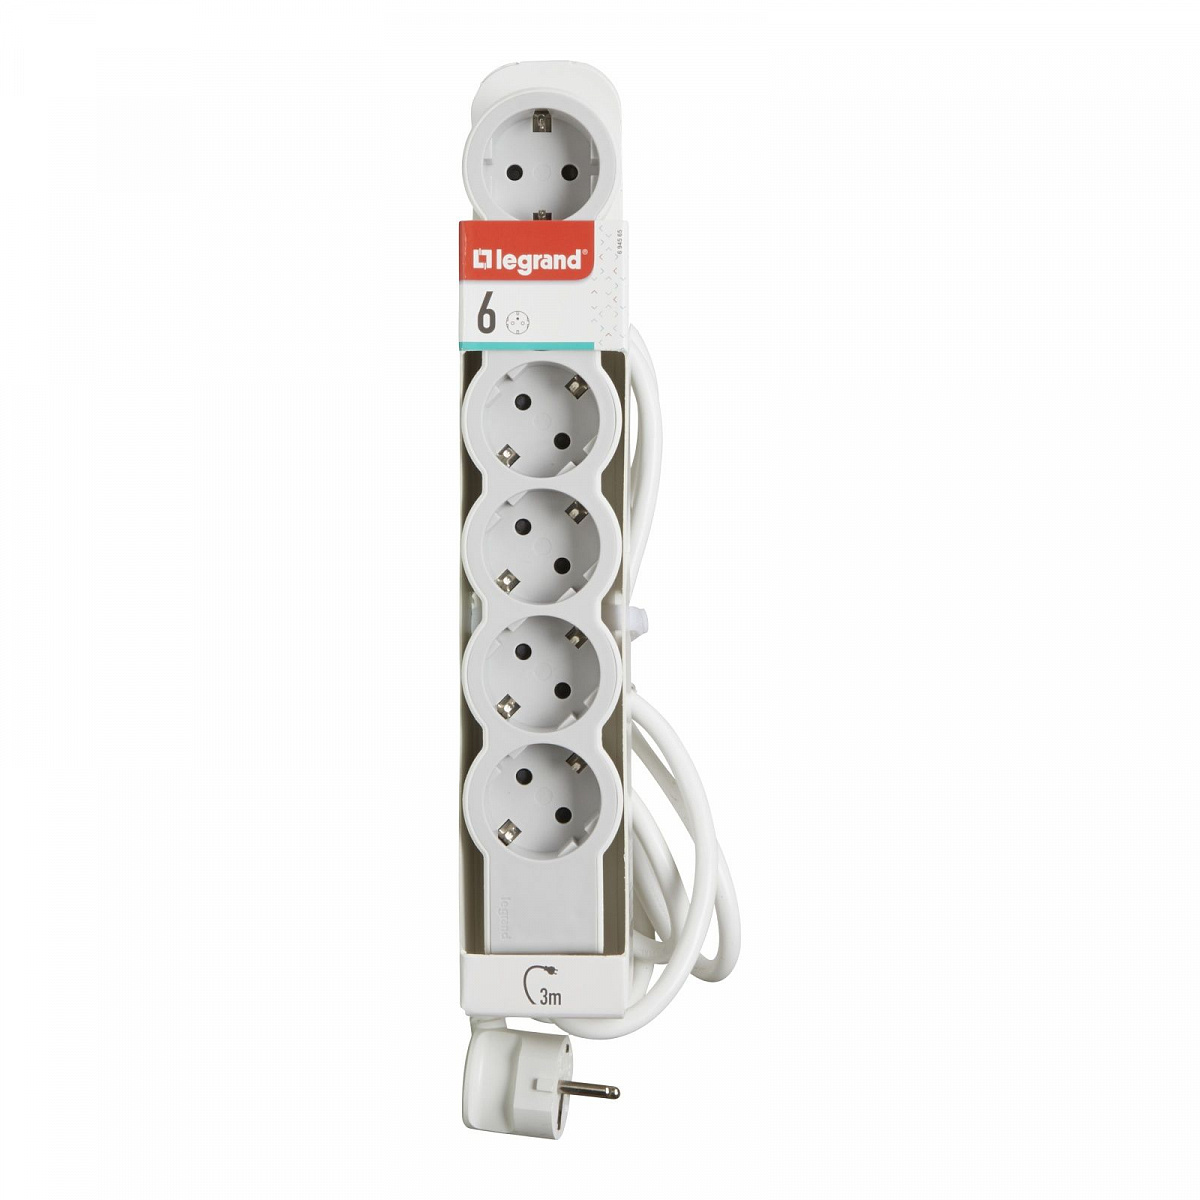 Удлинитель с заземлением Legrand 6 розеток с кабелем 3 м., цвет: бело-серый